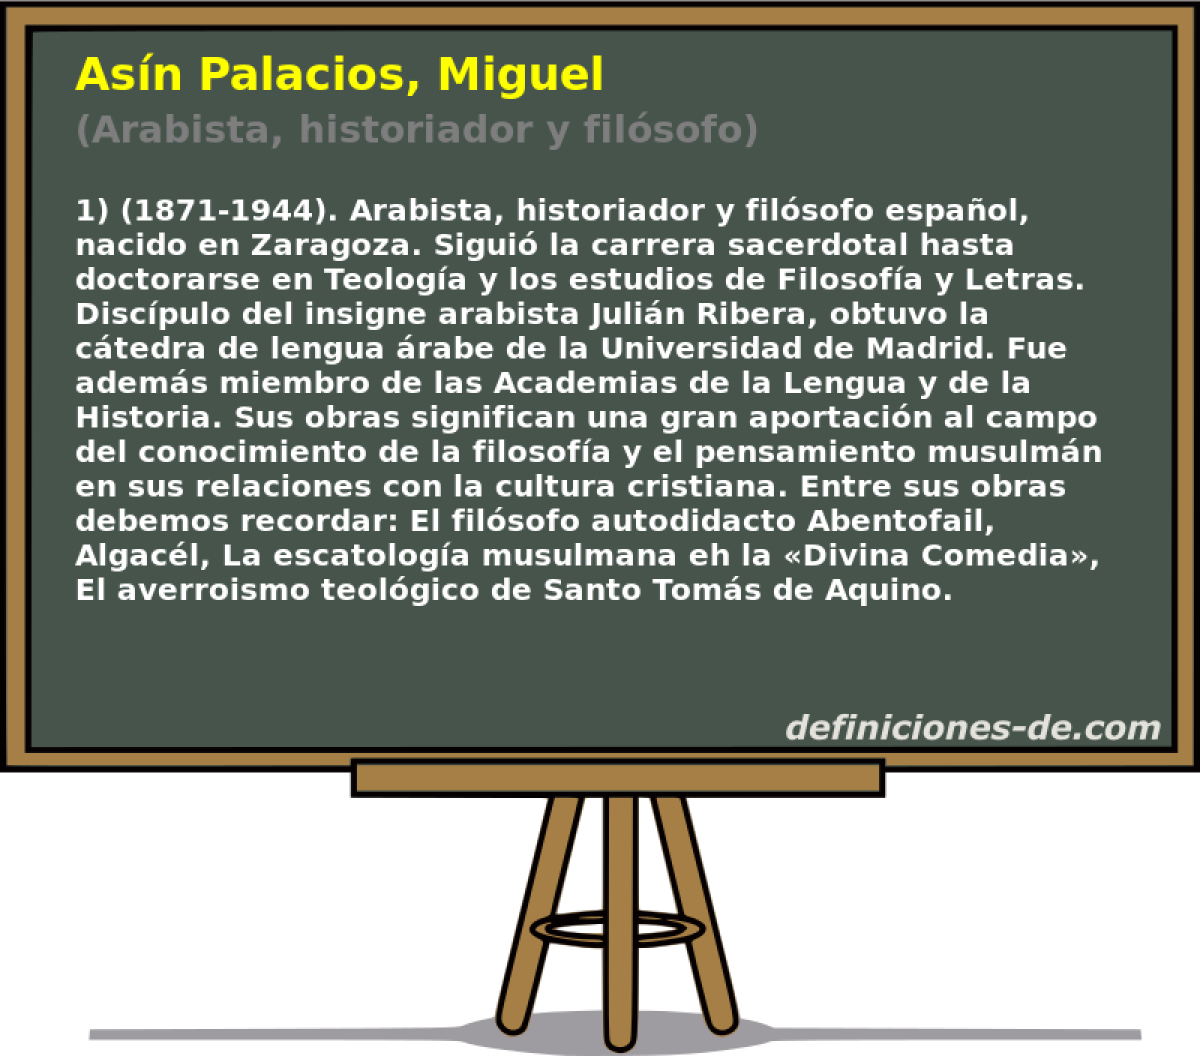 Asn Palacios, Miguel (Arabista, historiador y filsofo)